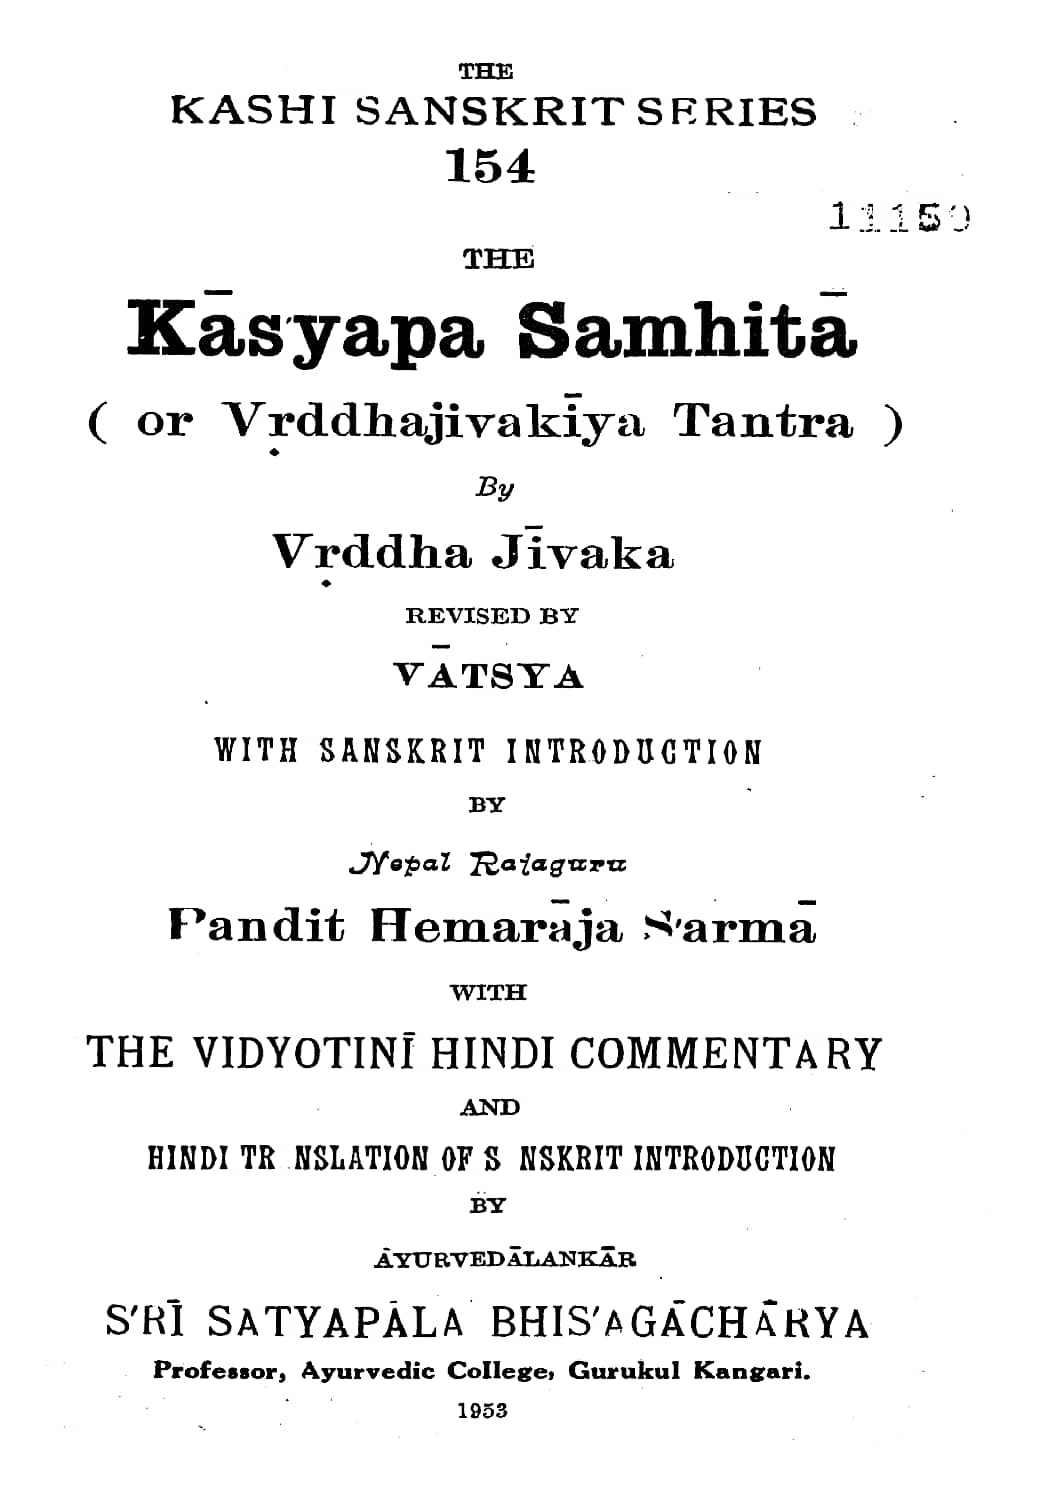 kashyap-samhita-pdf